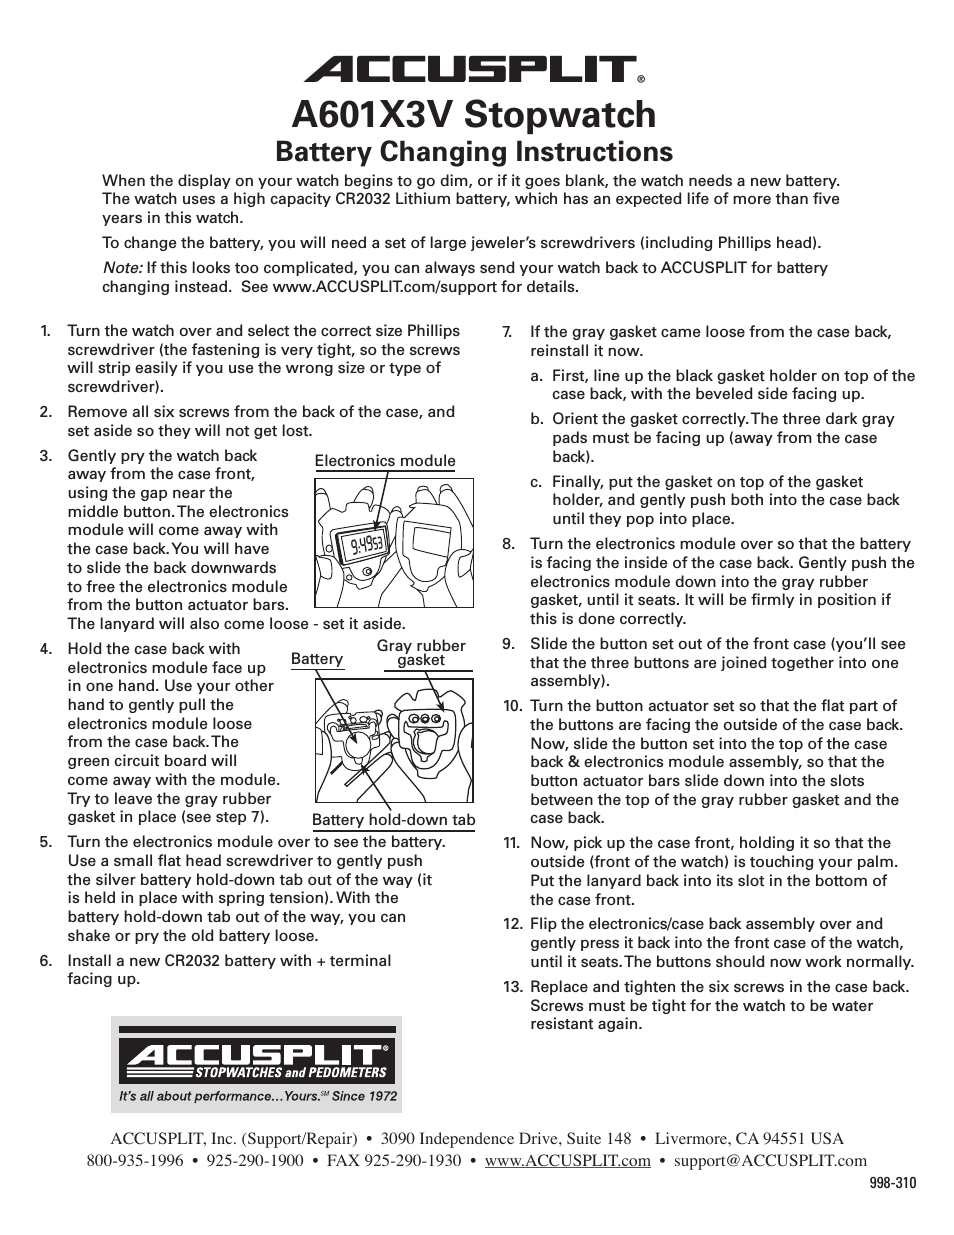 A601X3V Battery Instructions